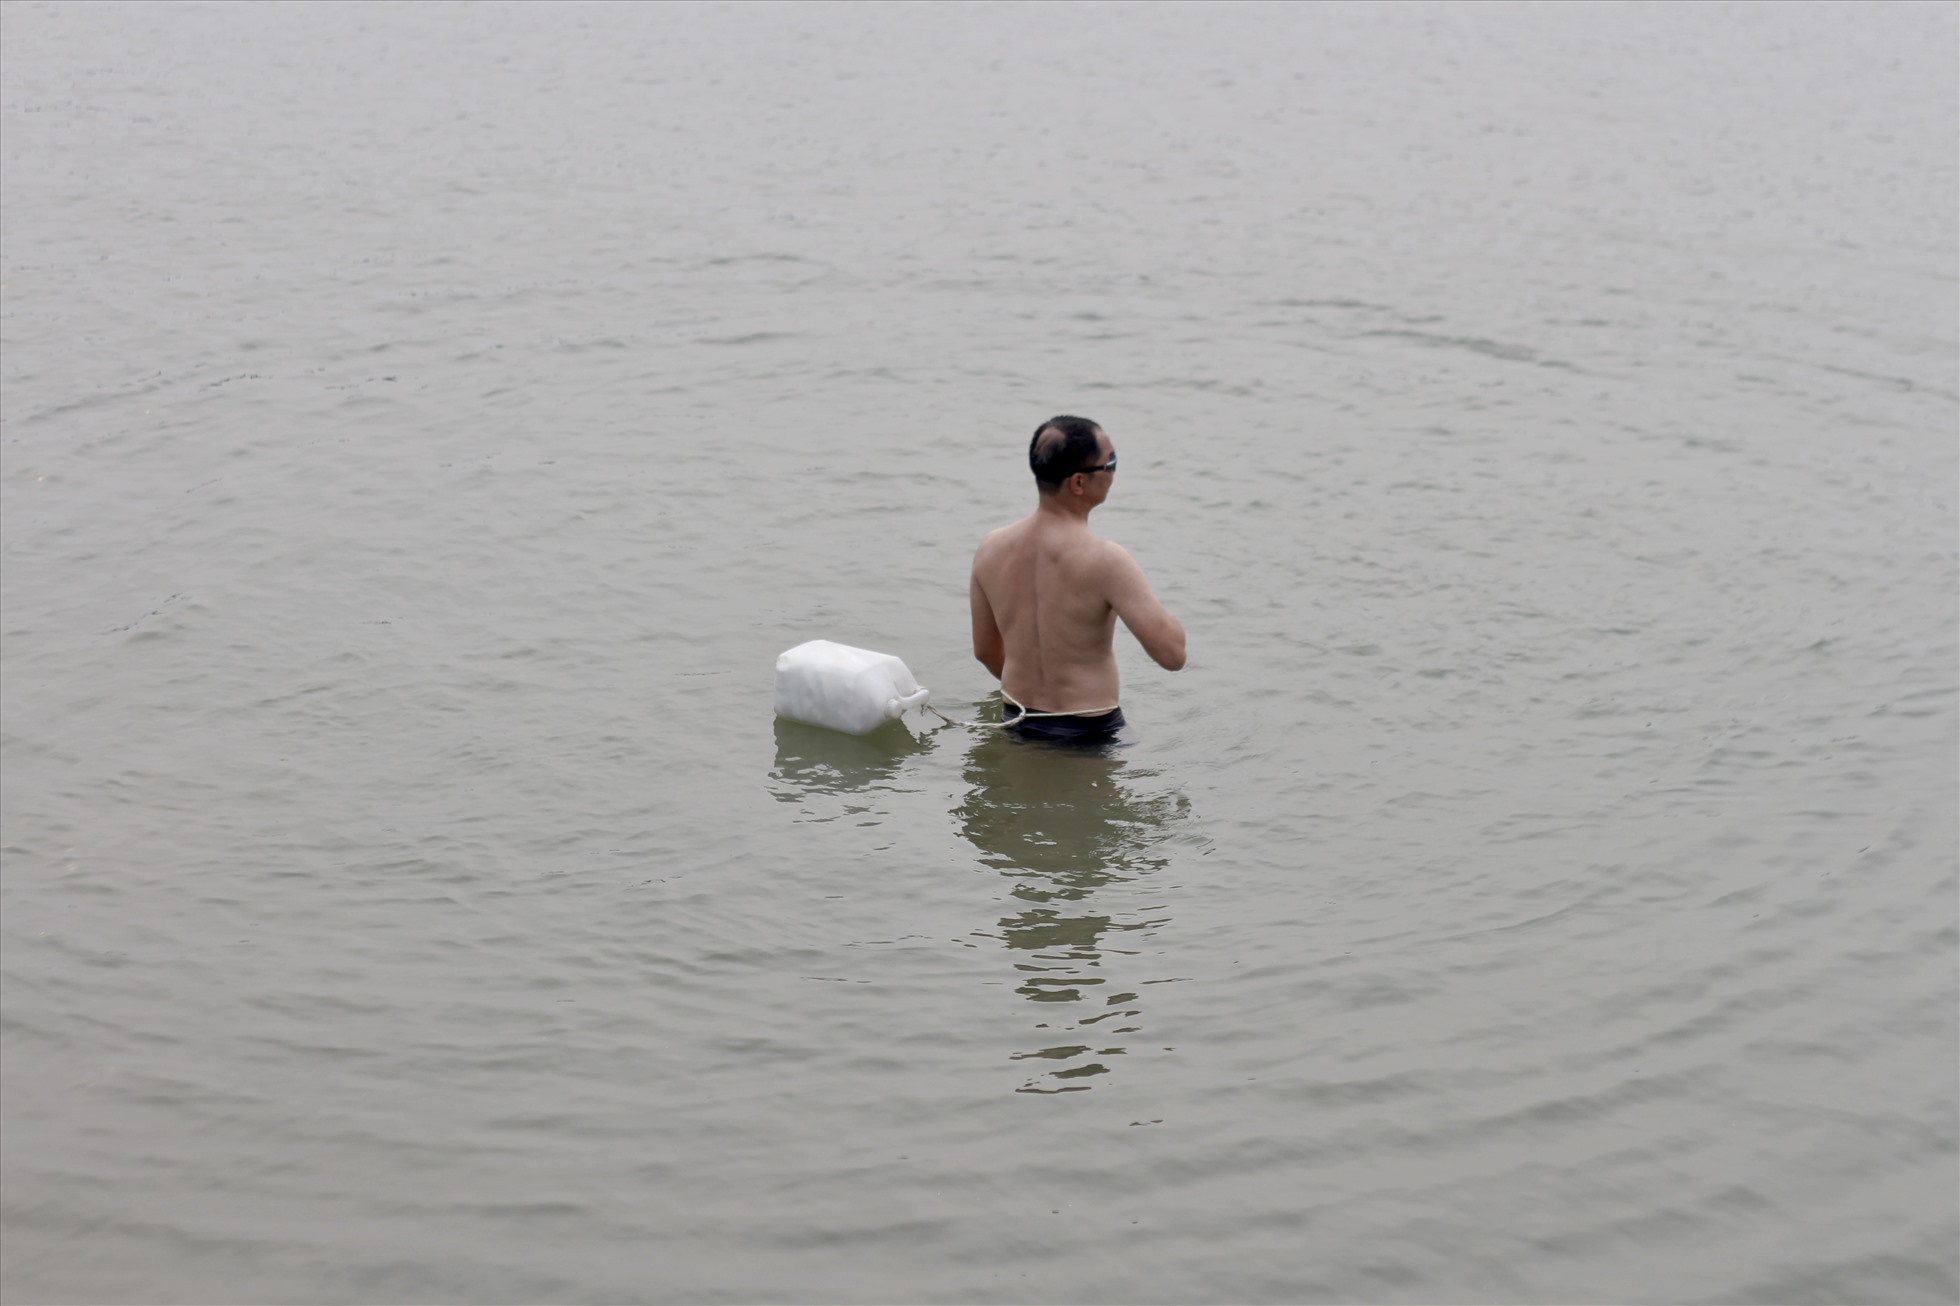 Người dân đi bơi chỉ mang theo can nhựa để làm “phao cứu sinh”. Ảnh: Minh Hồng